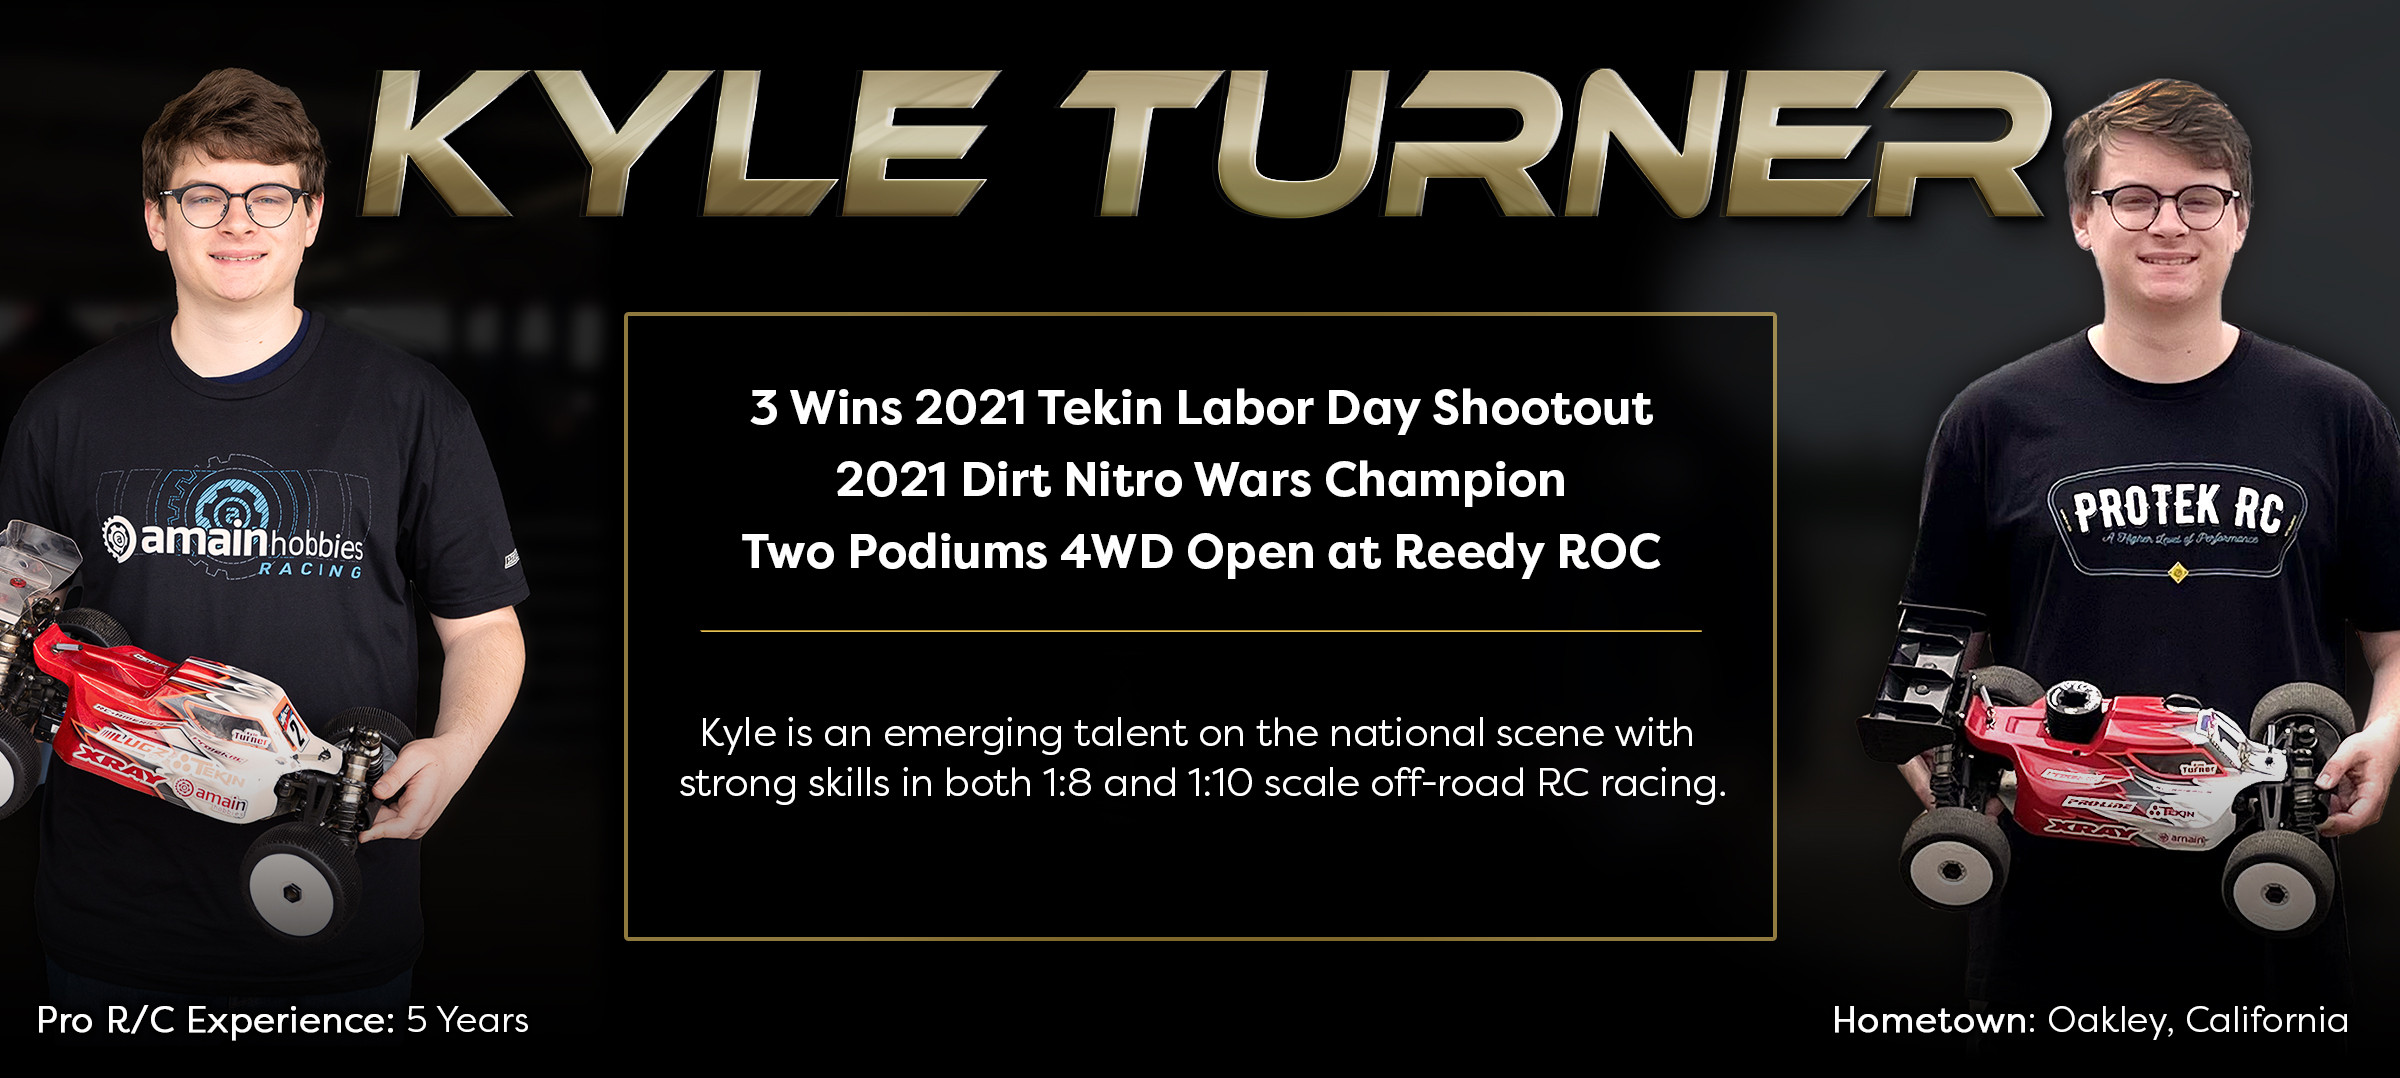 ProTek RC PRO Team Driver Kyle Turner